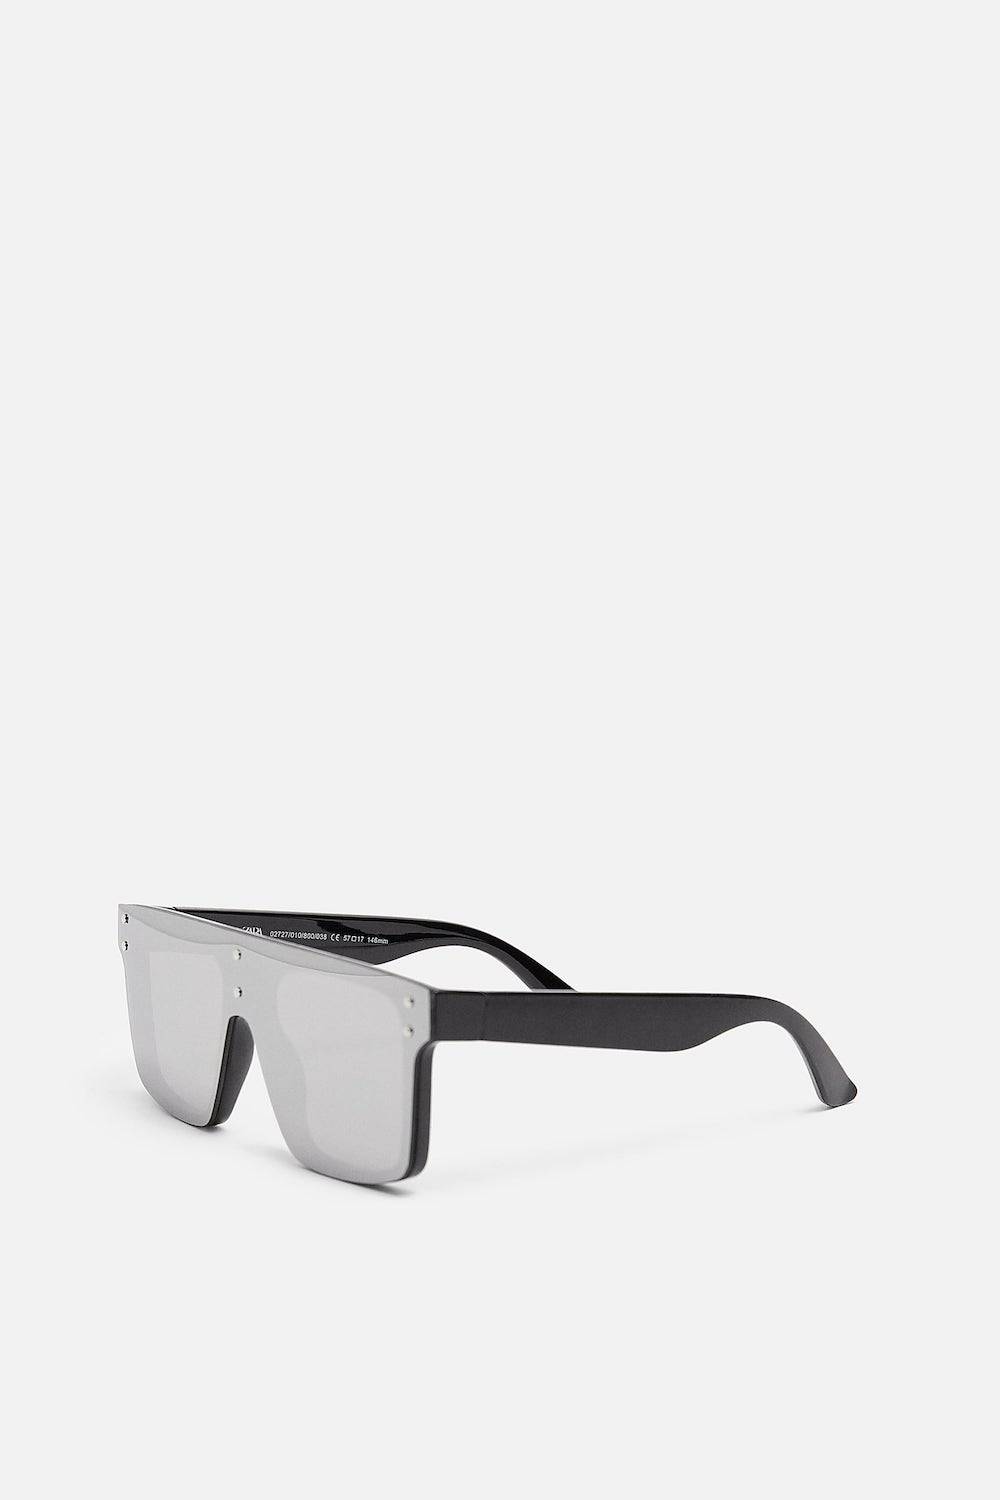 Okulary przeciwsłoneczne Zara, cena 79,90 zł (Fot. Materiały prasowe)